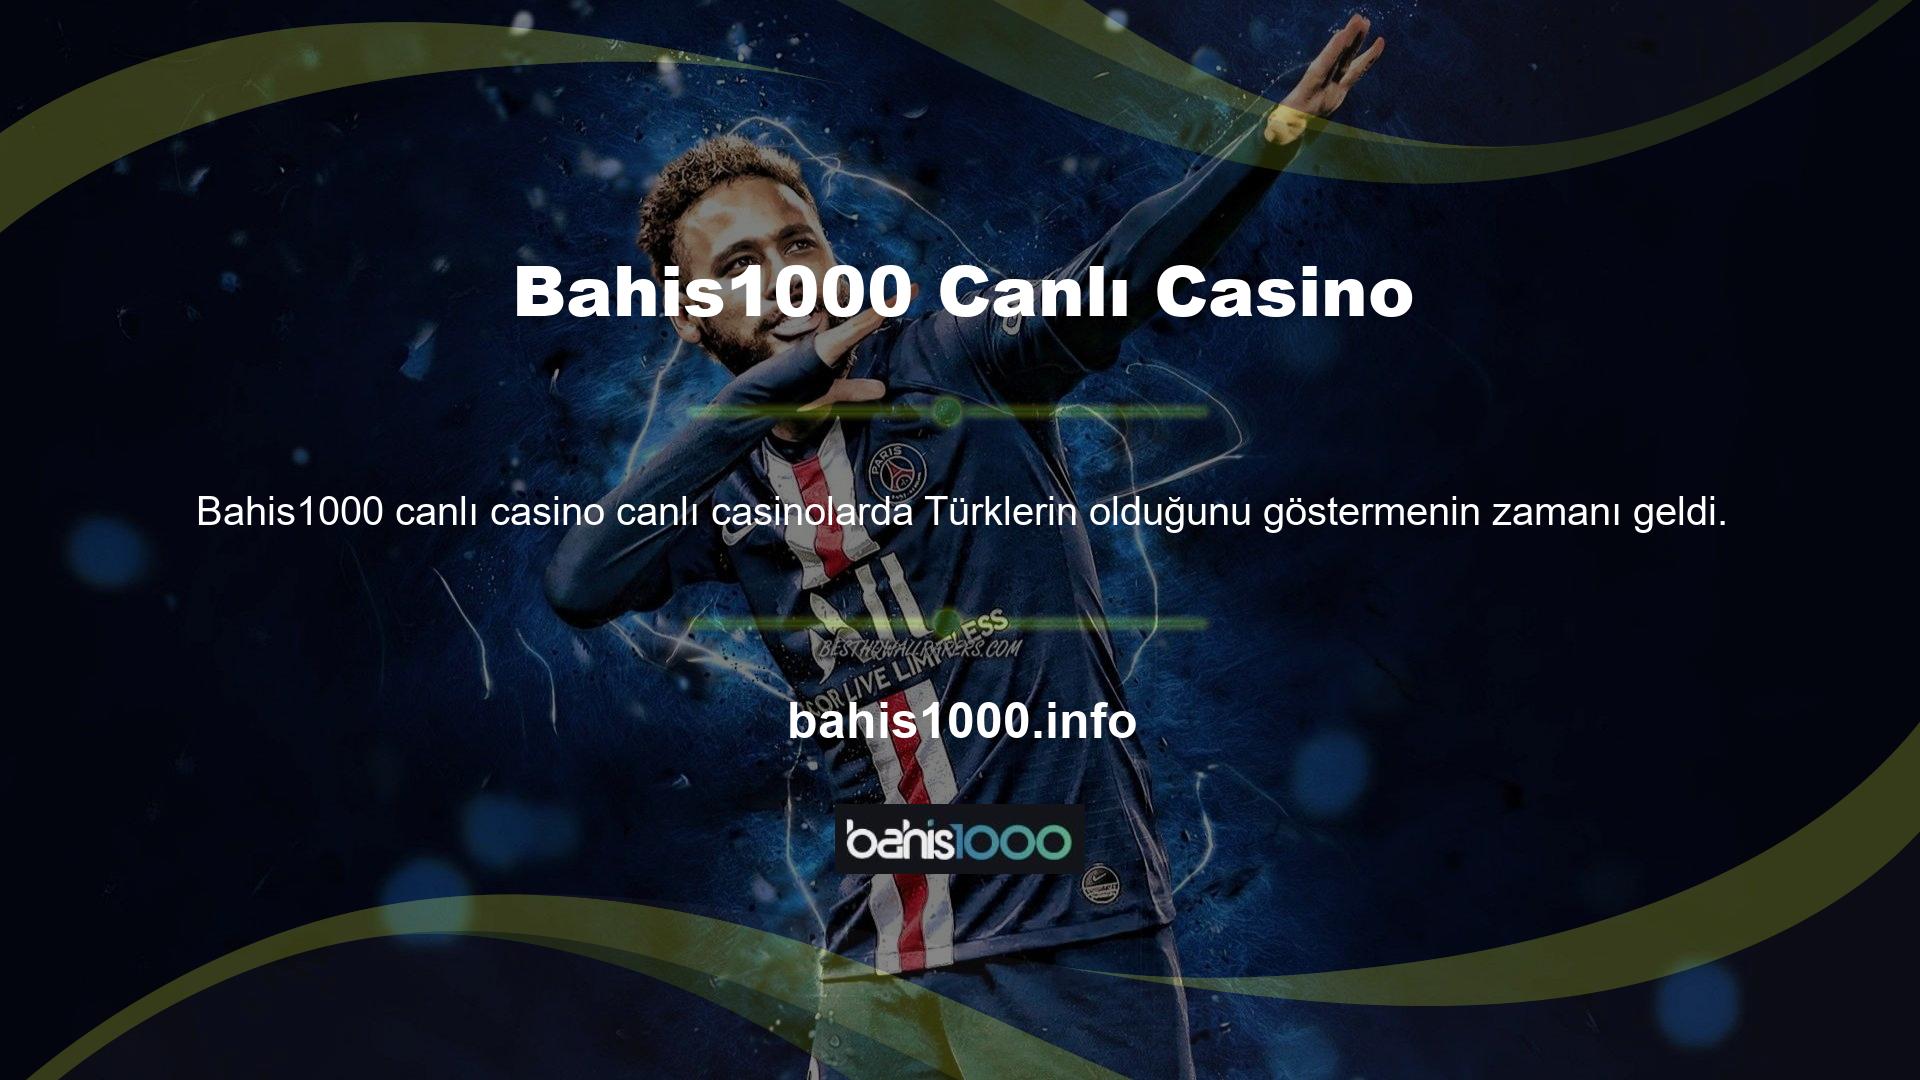 Canlı bir casinoya gitme ve diğer Türklerle tanışma fırsatınız var